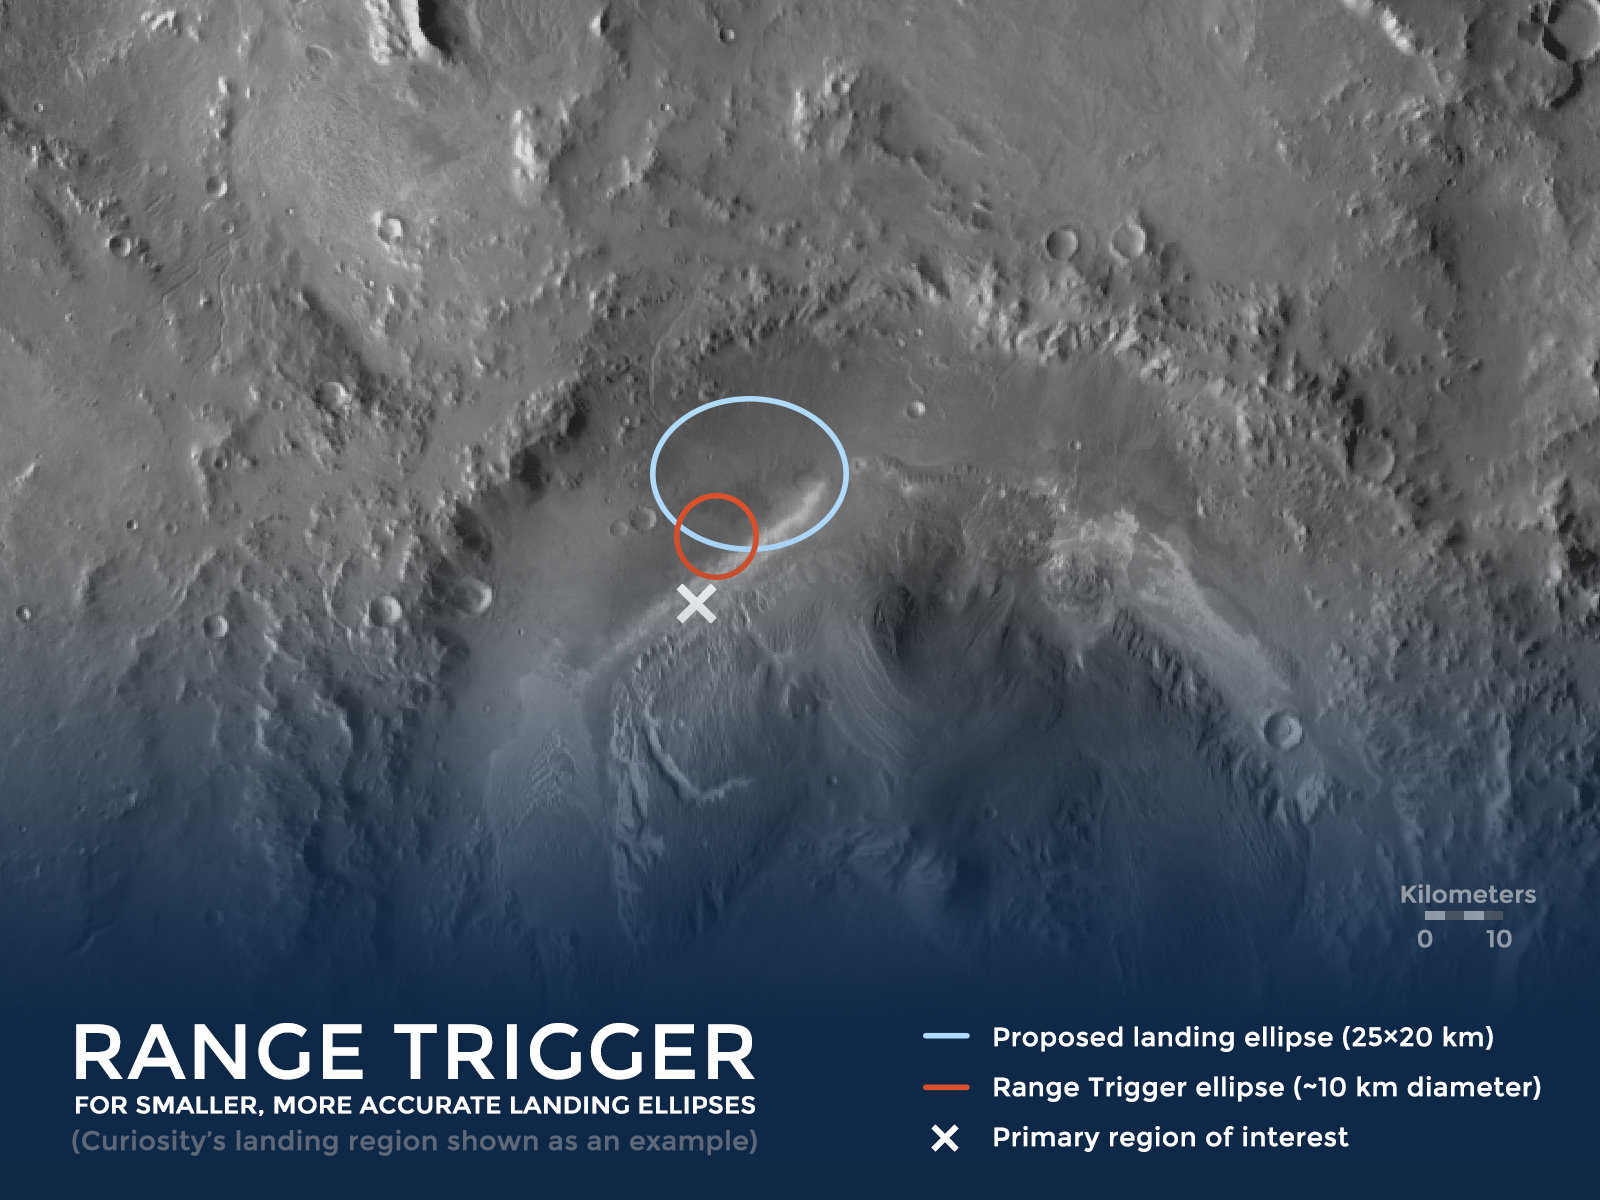 Range-Trigger-Rover-Landing-Site